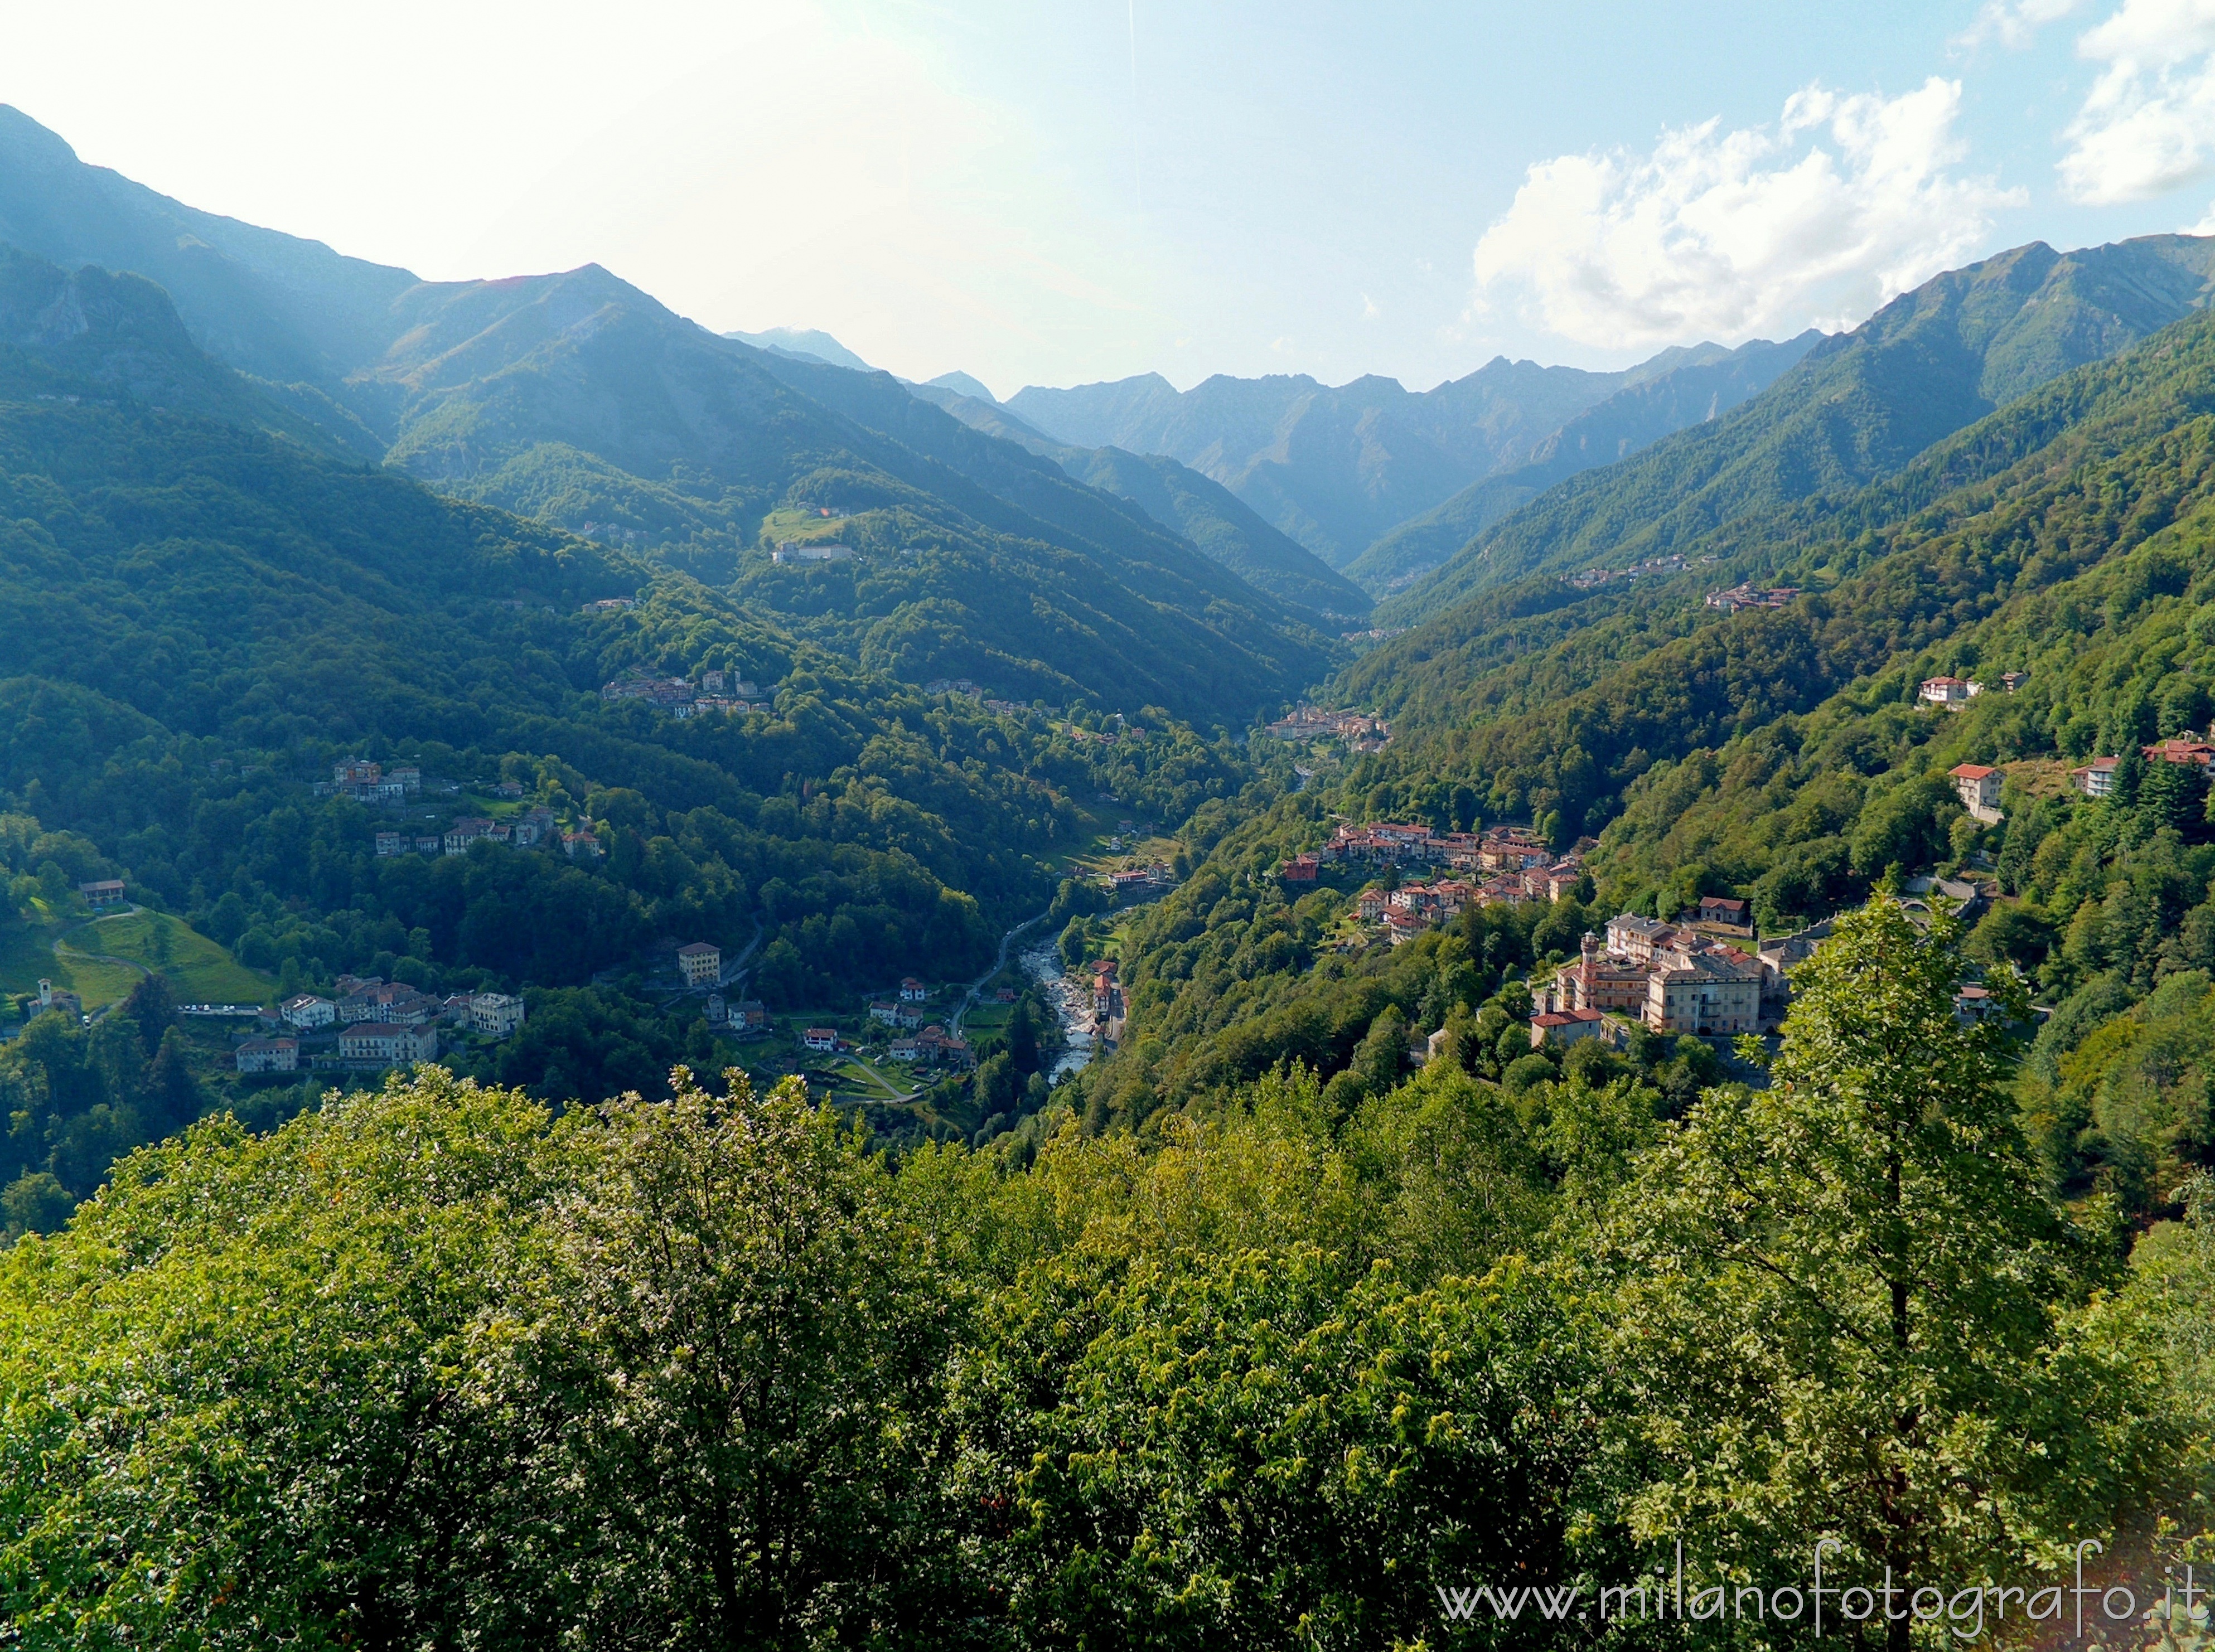 Oriomosso (Biella, Italy): Upper Cervo Valley seen from the Pila Belvedere - Oriomosso (Biella, Italy)